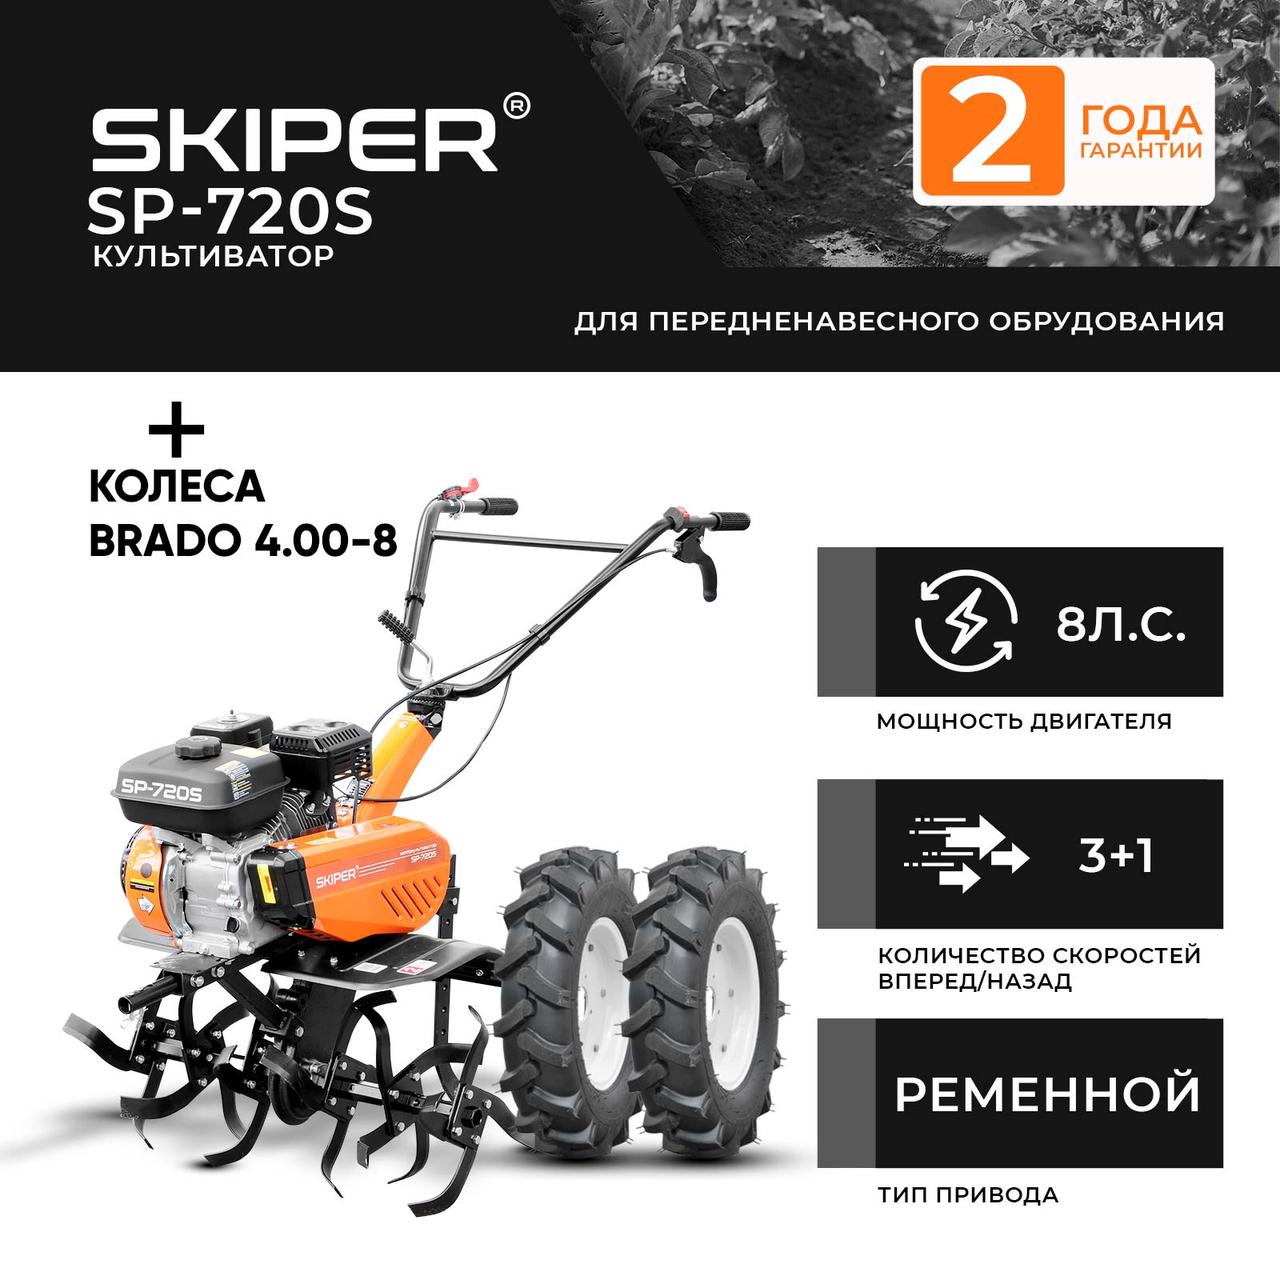 Культиватор SKIPER SP-720 + колеса BRADO 4.00-8  (комплект)